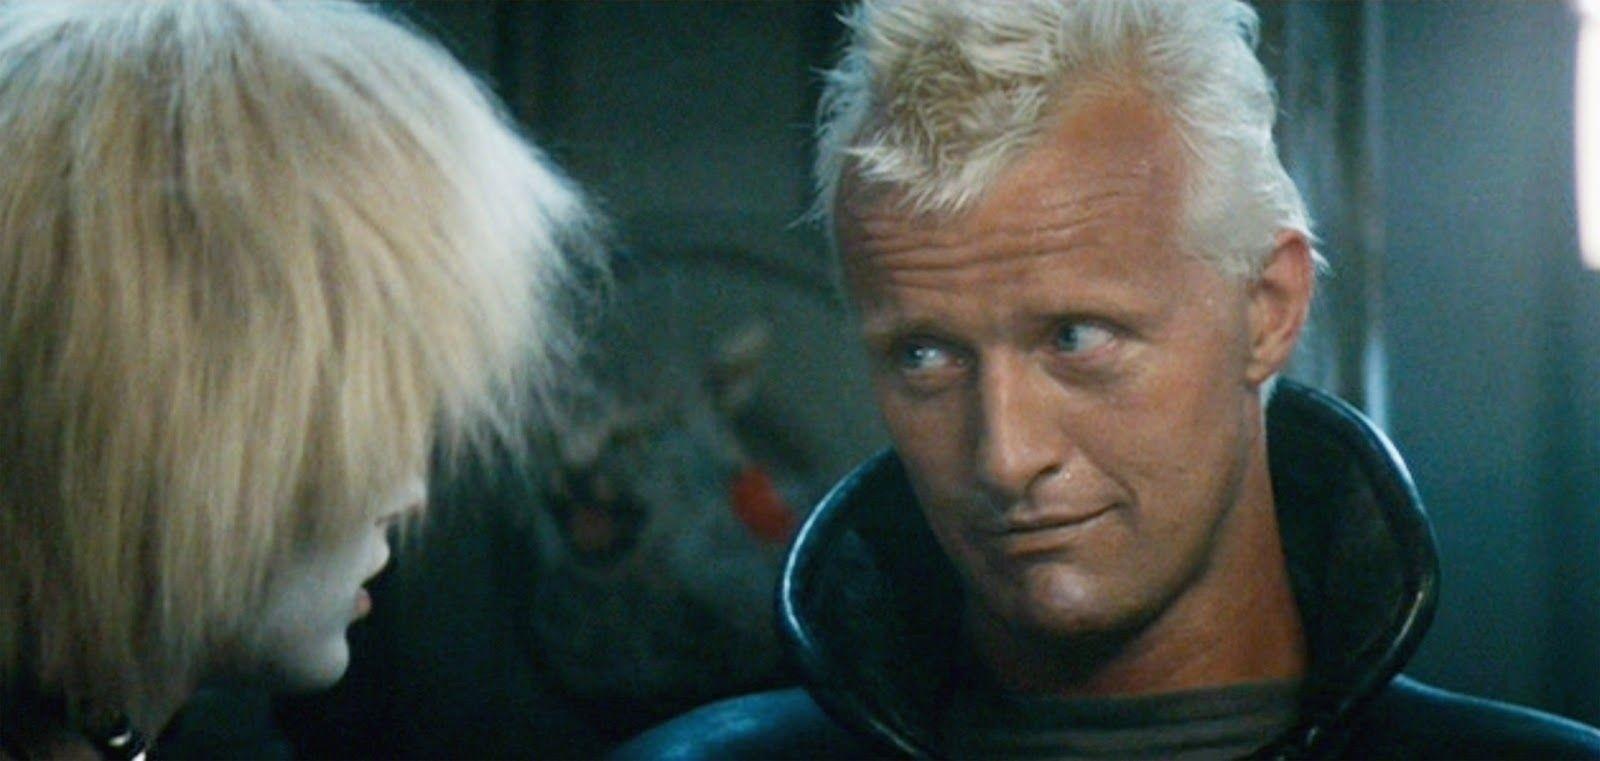 Óbito | Rutger Hauer, eterno vilão de “Blade Runner”, morre aos 75 anos 